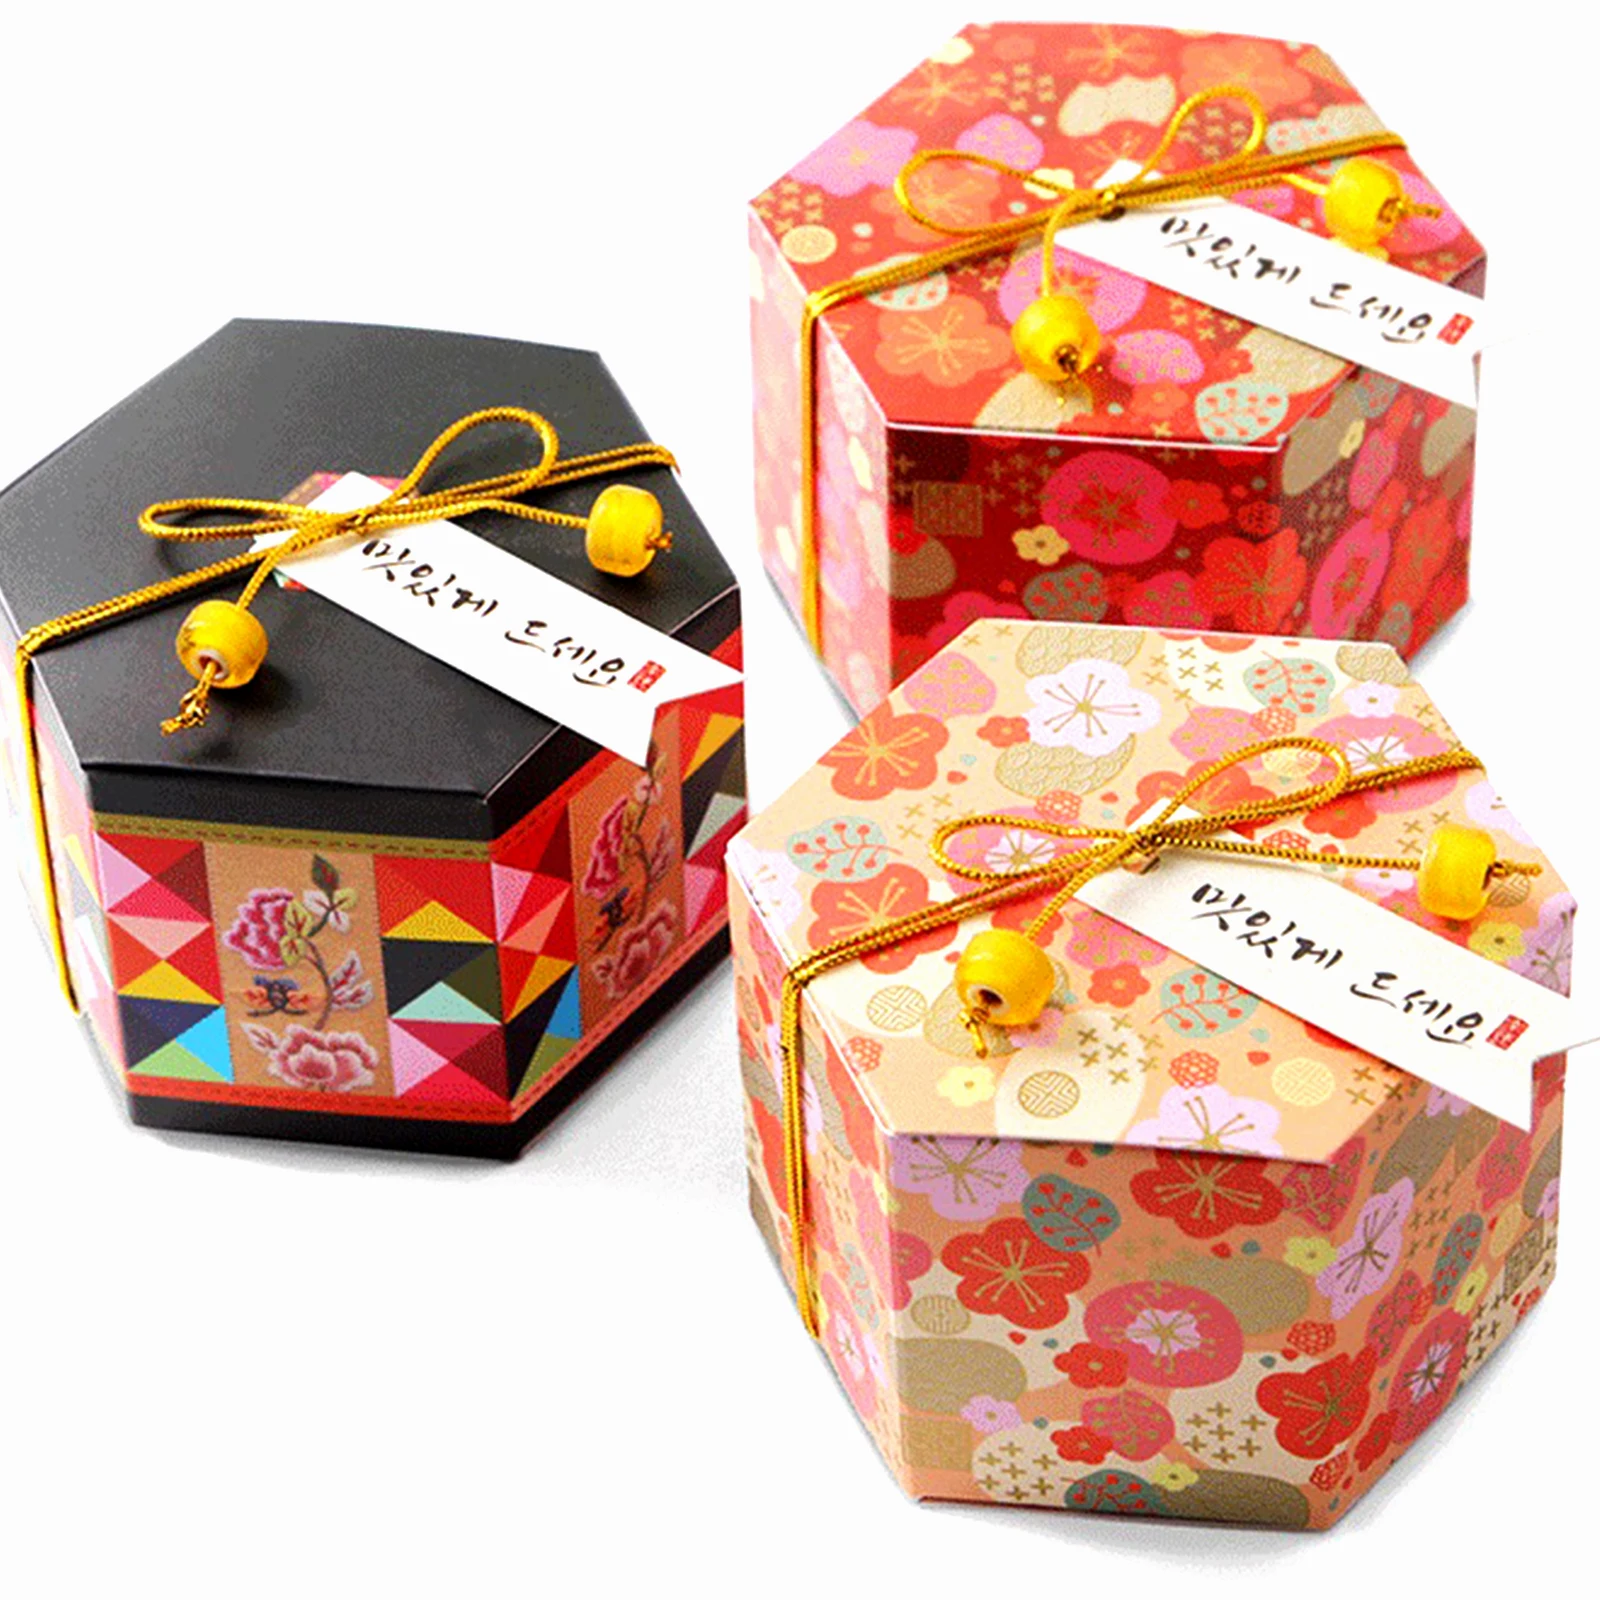 5 шт. бумажная Цветочная Шестигранная упаковка для конфет, печенья шоколадный подарок коробка с лентой для дня рождения свадьбы Крещения юбилей тема Вечерние